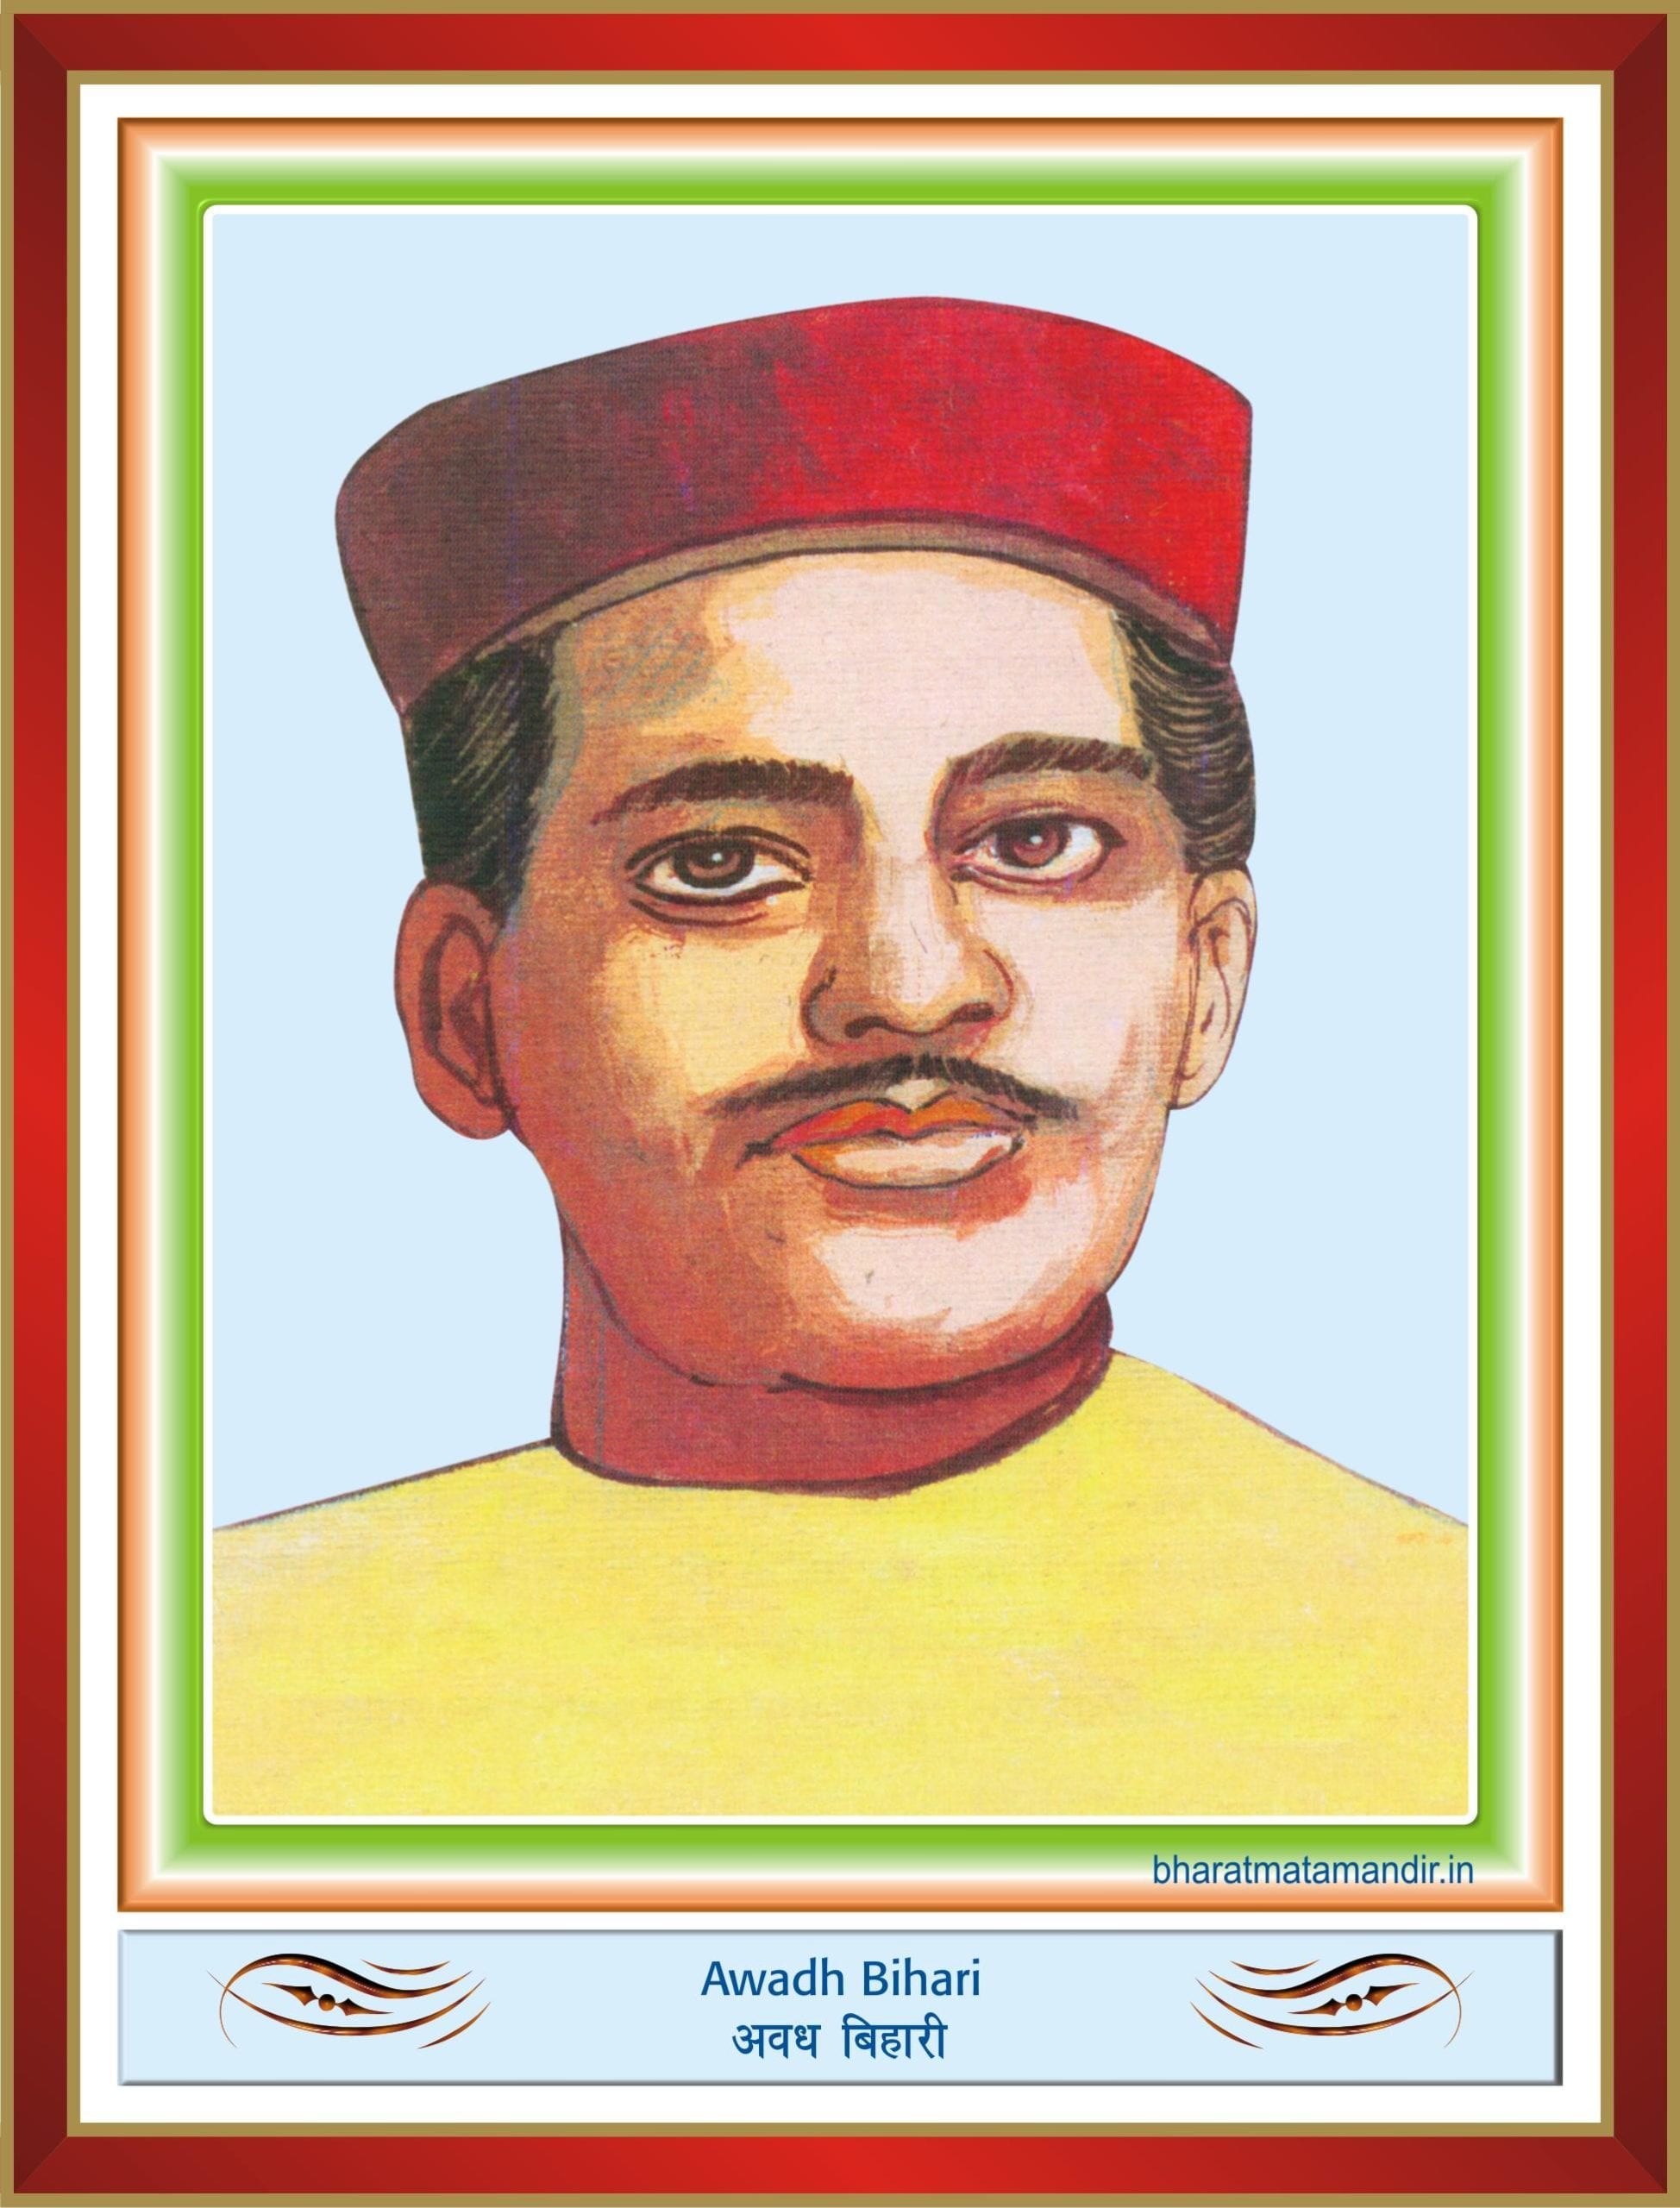 Avadh Bihari (14 November 1889 – 8 May 1915) | Bharat Mata Mandir